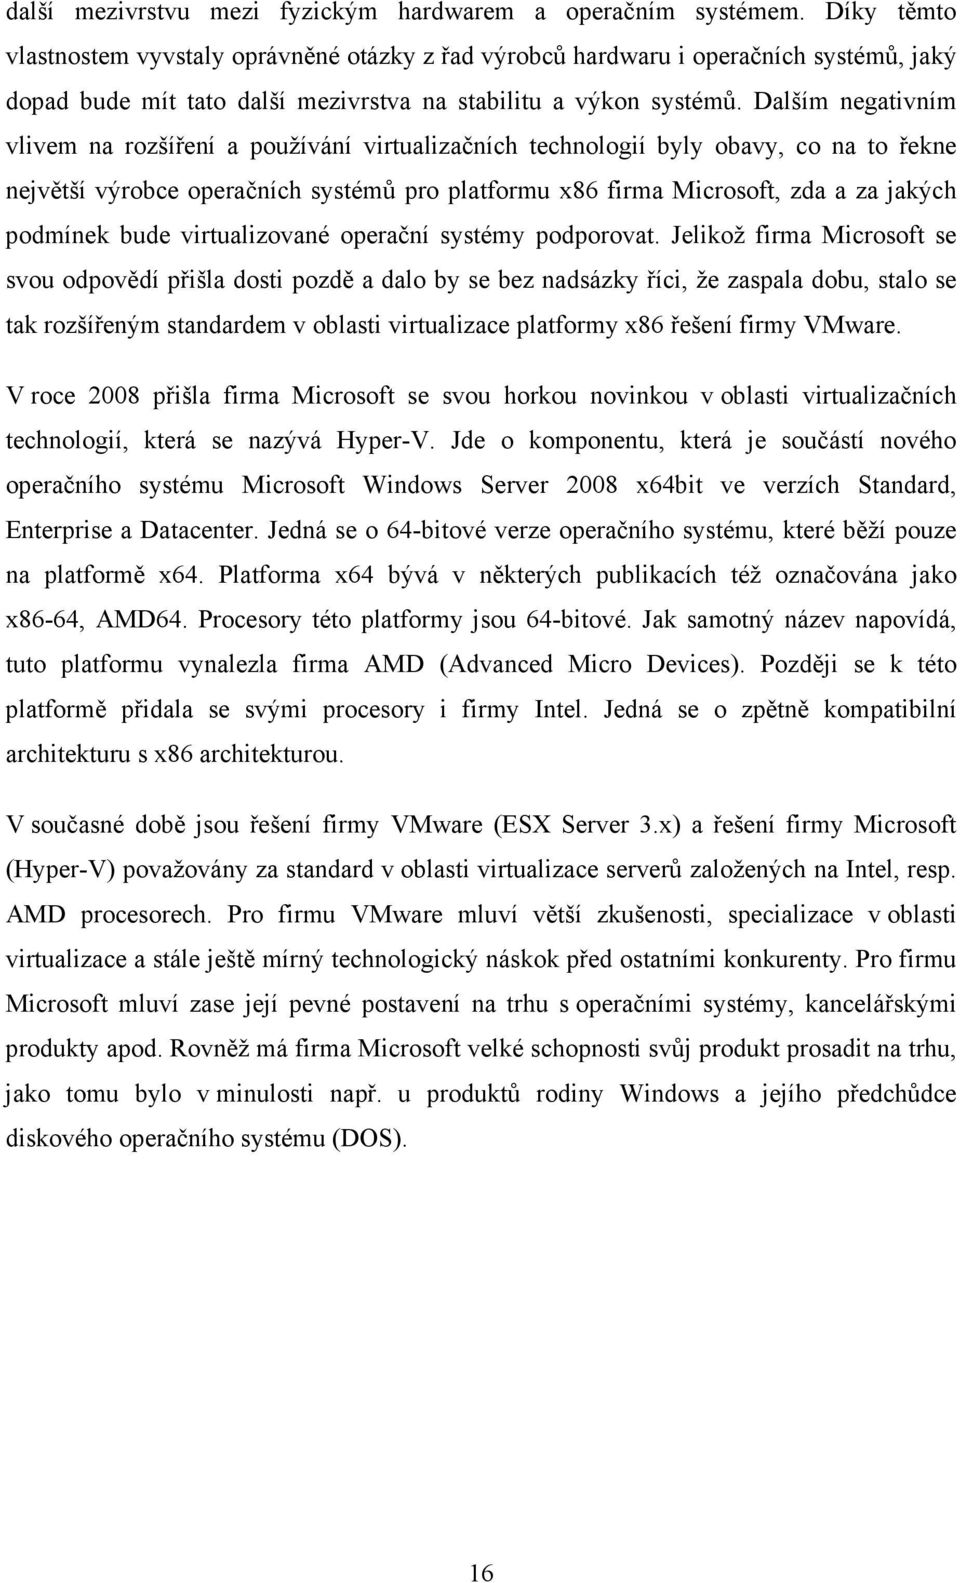 Dalším negativním vlivem na rozšíření a používání virtualizačních technologií byly obavy, co na to řekne největší výrobce operačních systémů pro platformu x86 firma Microsoft, zda a za jakých